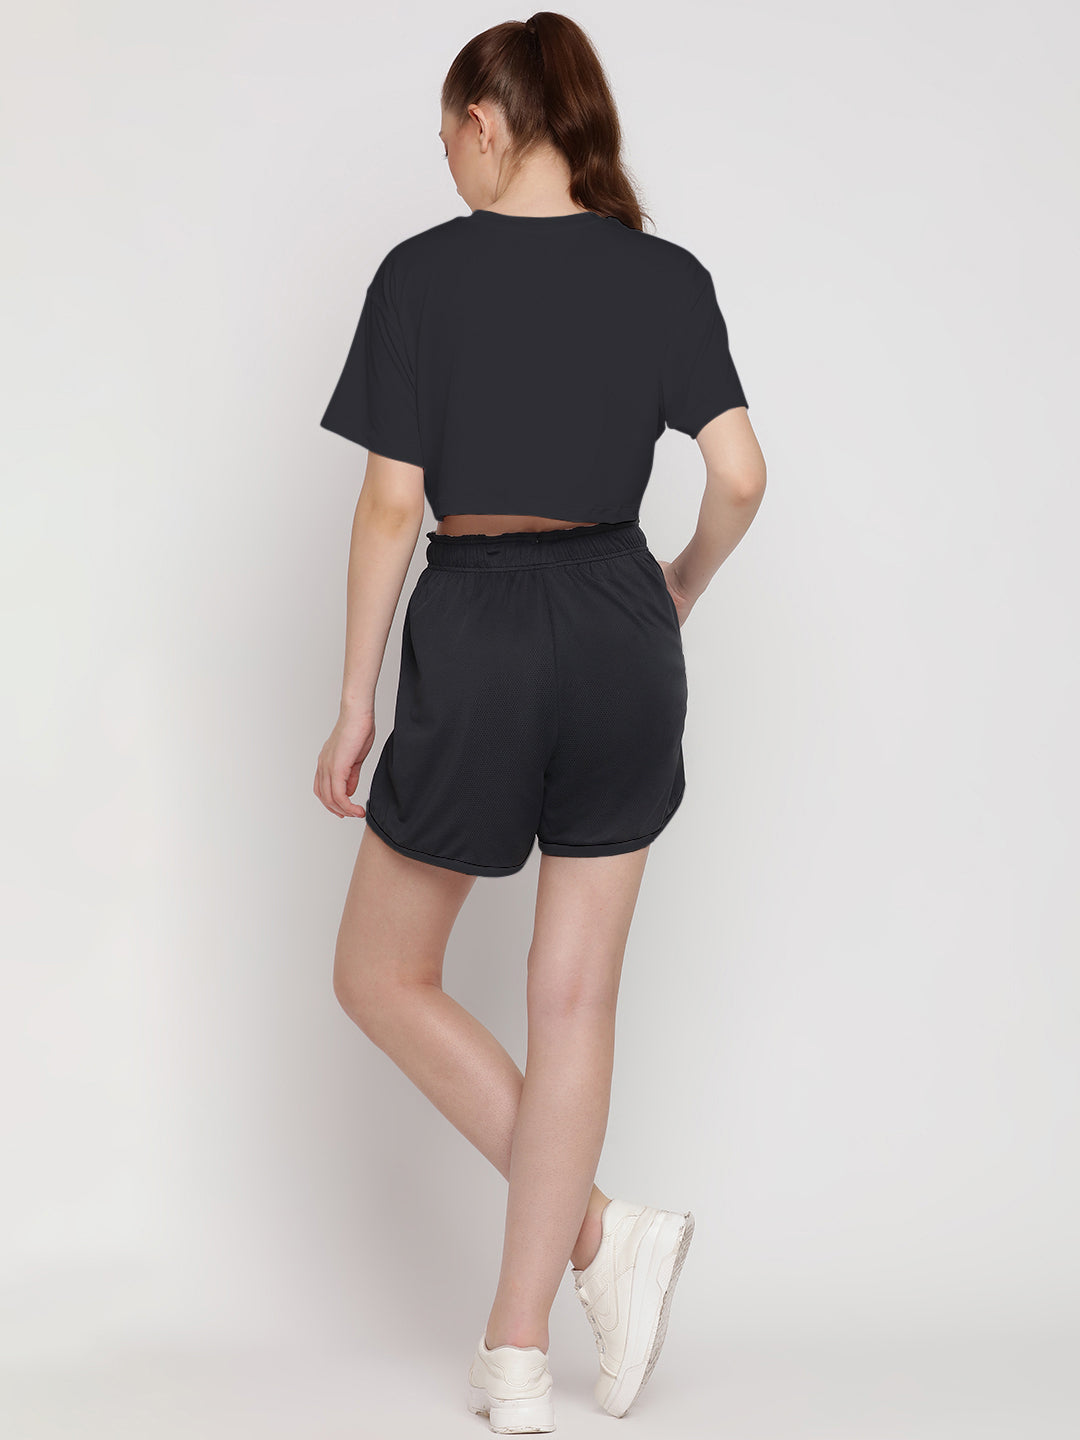 Flow Fit Shorts & Crop Top Set - Black